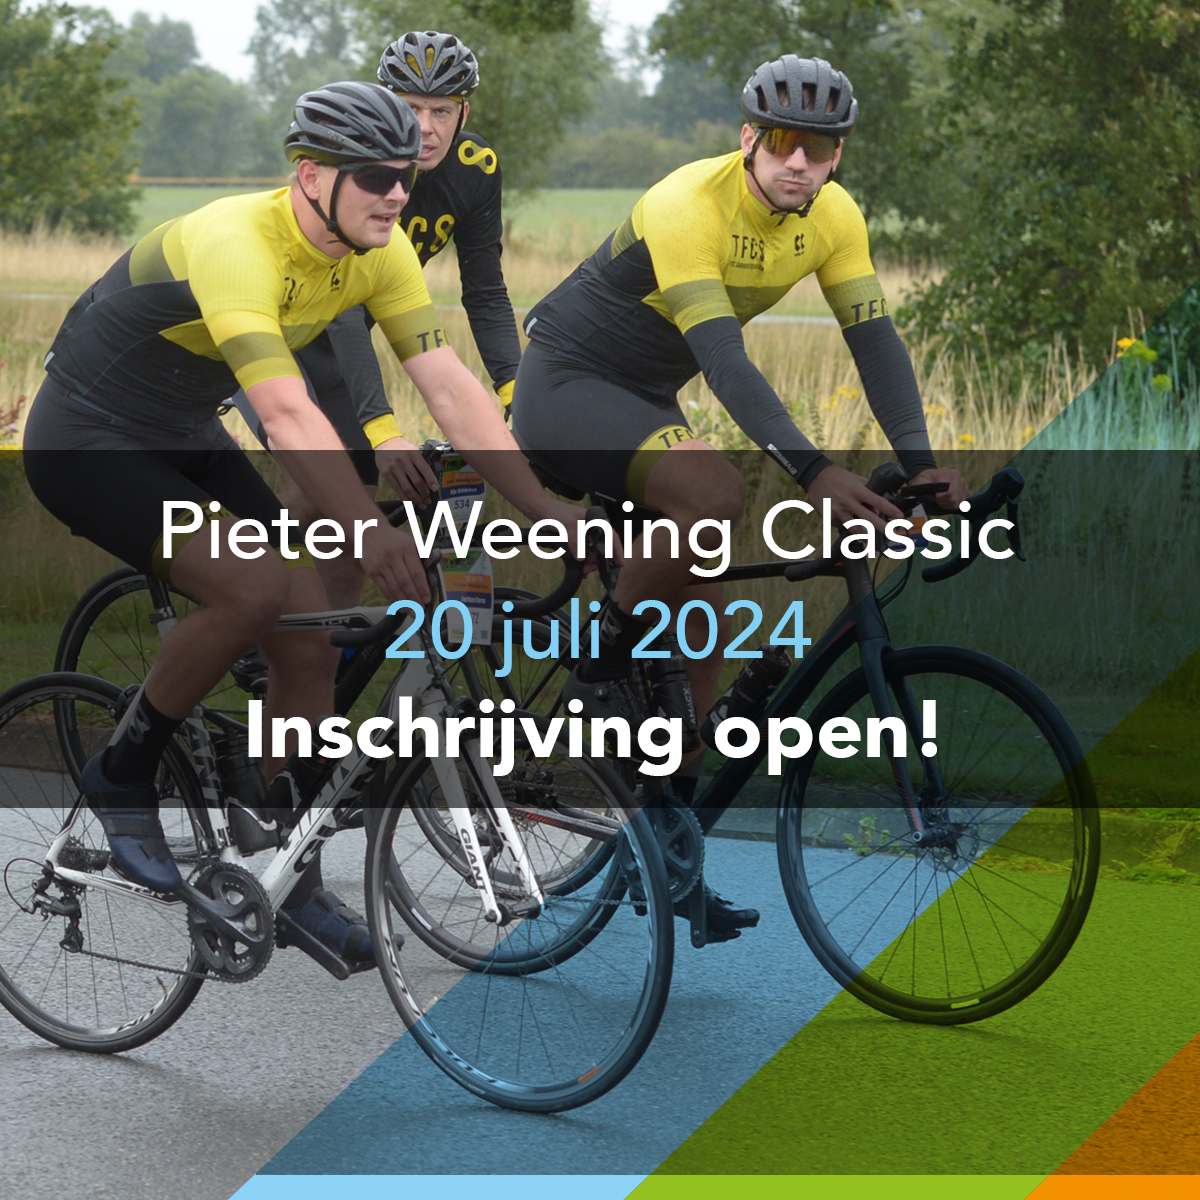 Pieter Weening Classic inschrijving open